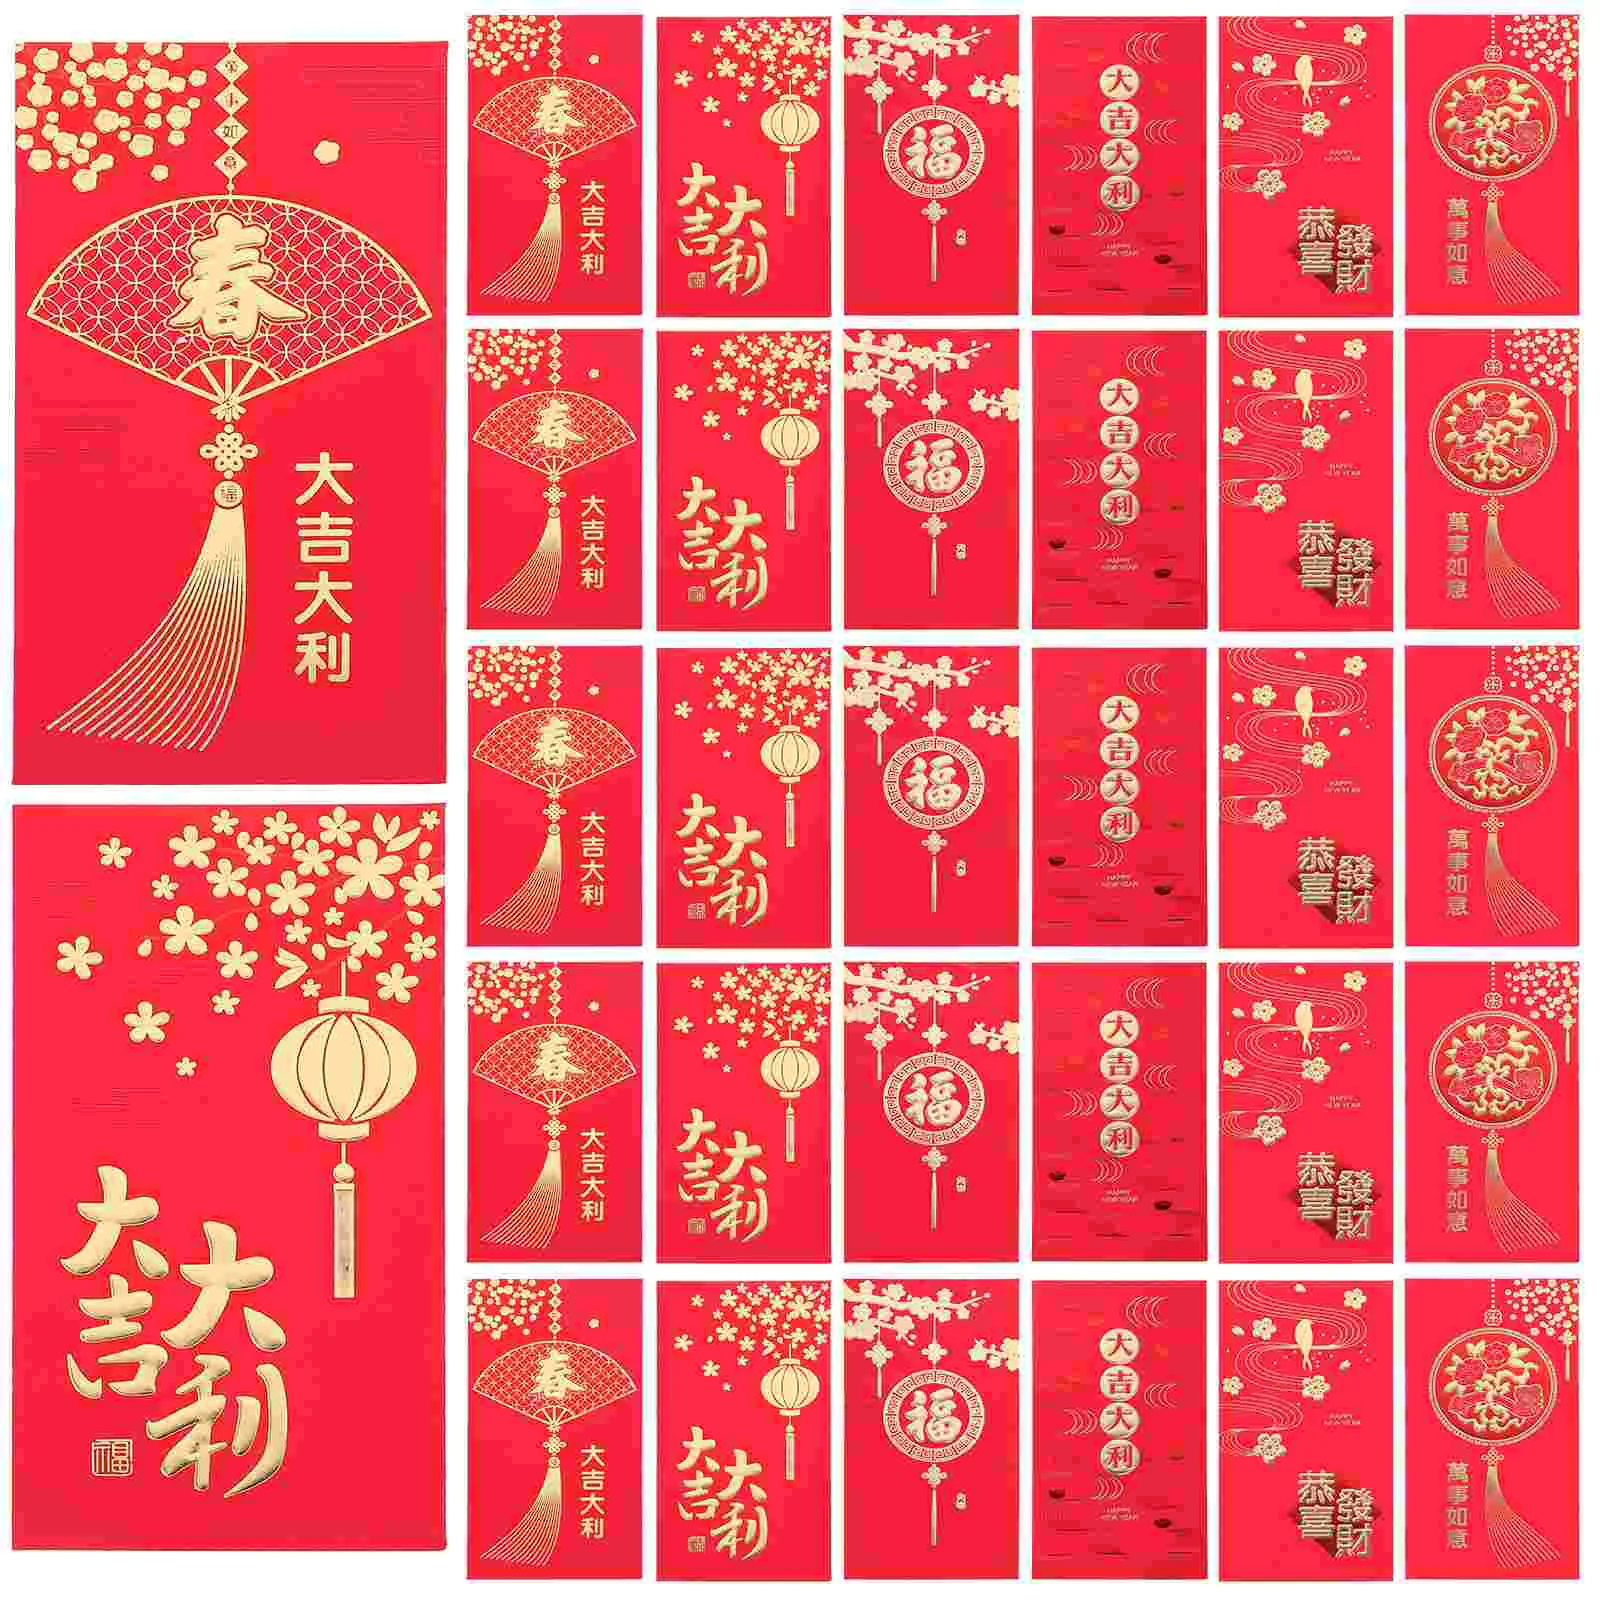 

Праздничные красные конверты в китайском стиле ретро, подарочные конверты для денег, красные пакеты для нового года 2020 года (смешанный стиль), 36 шт.